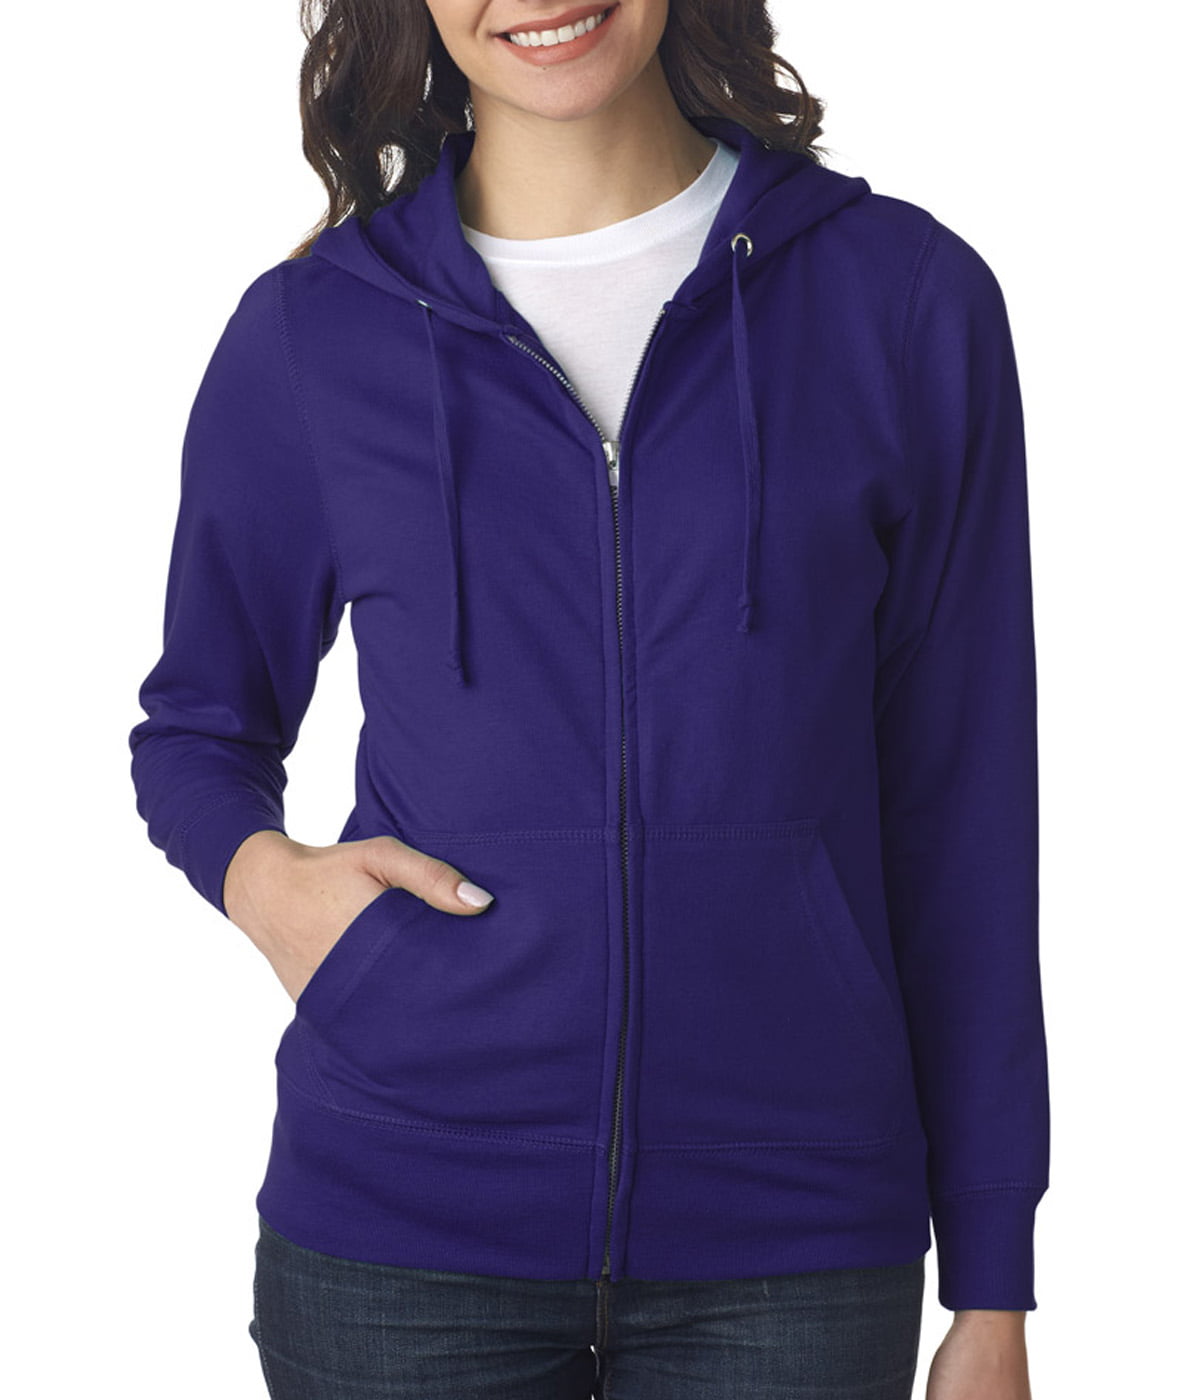 LAT Apparel - LAT Full-Zip Hoodie (3763) Purple, L - Walmart.com ...